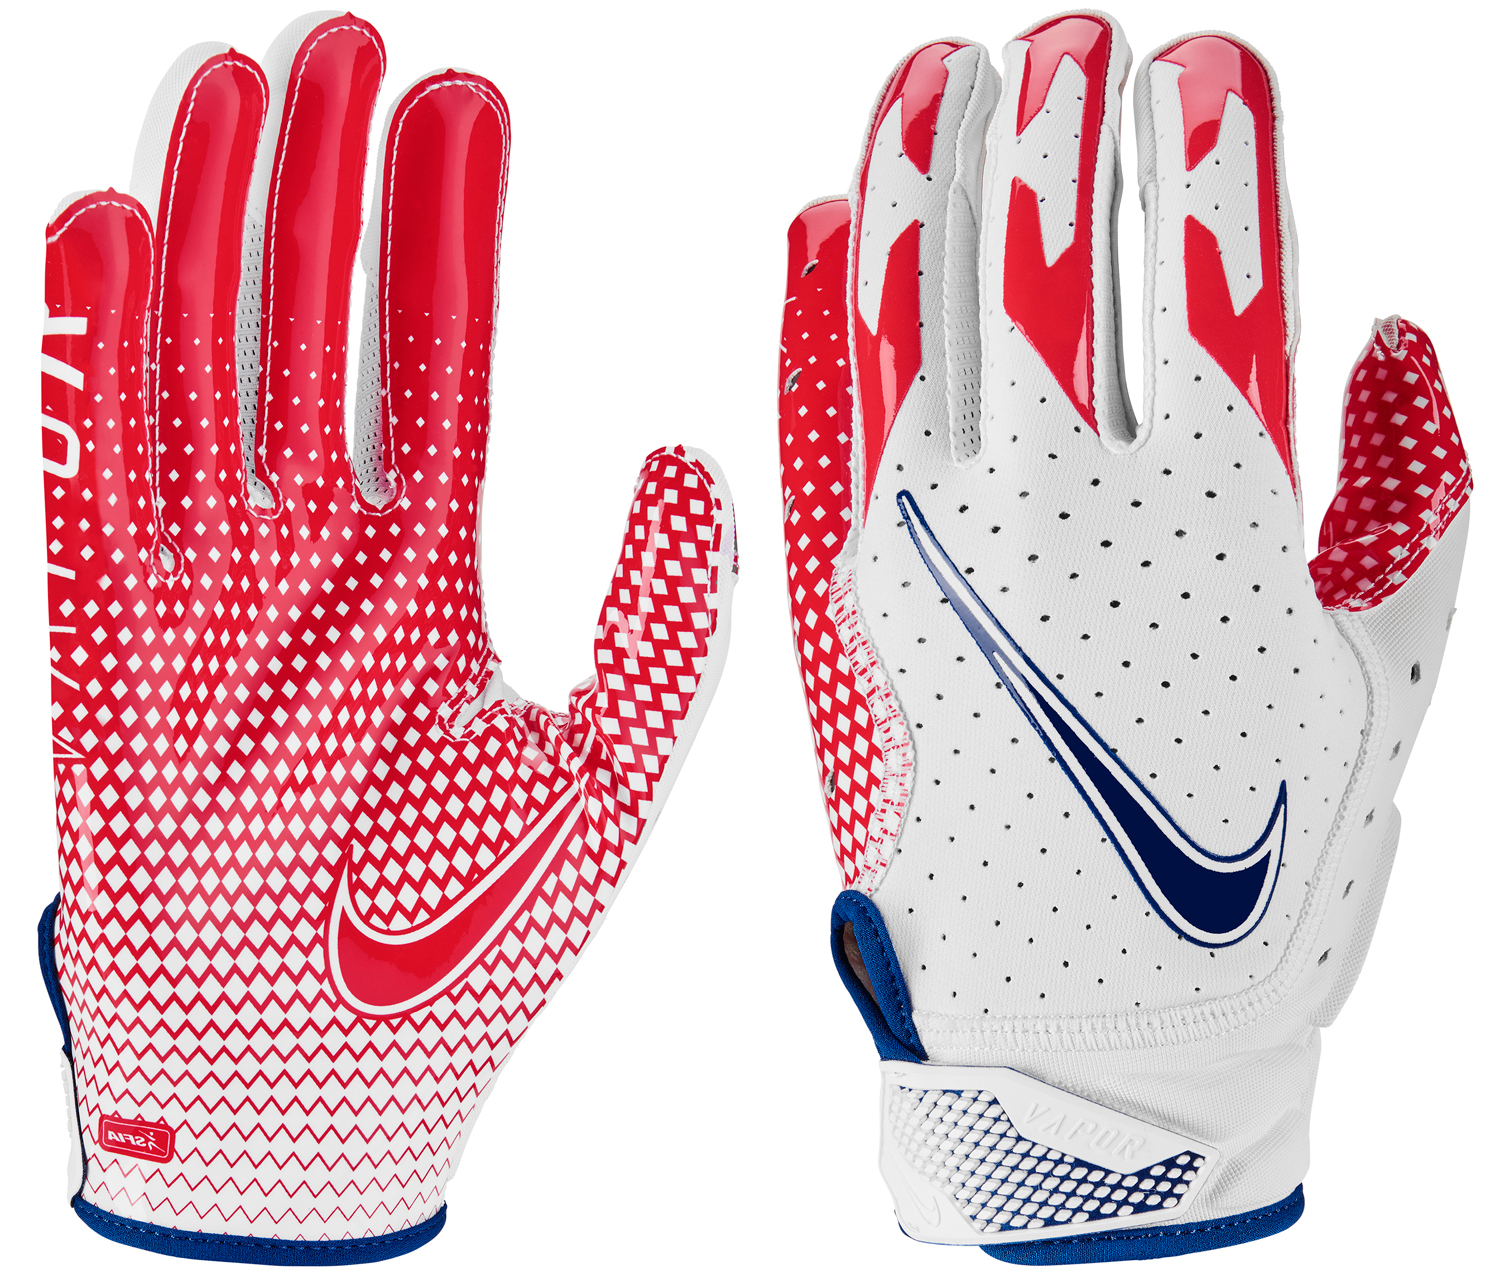 Nike Vapor Jet 6.0 Adult Football Gloves, New   eBay